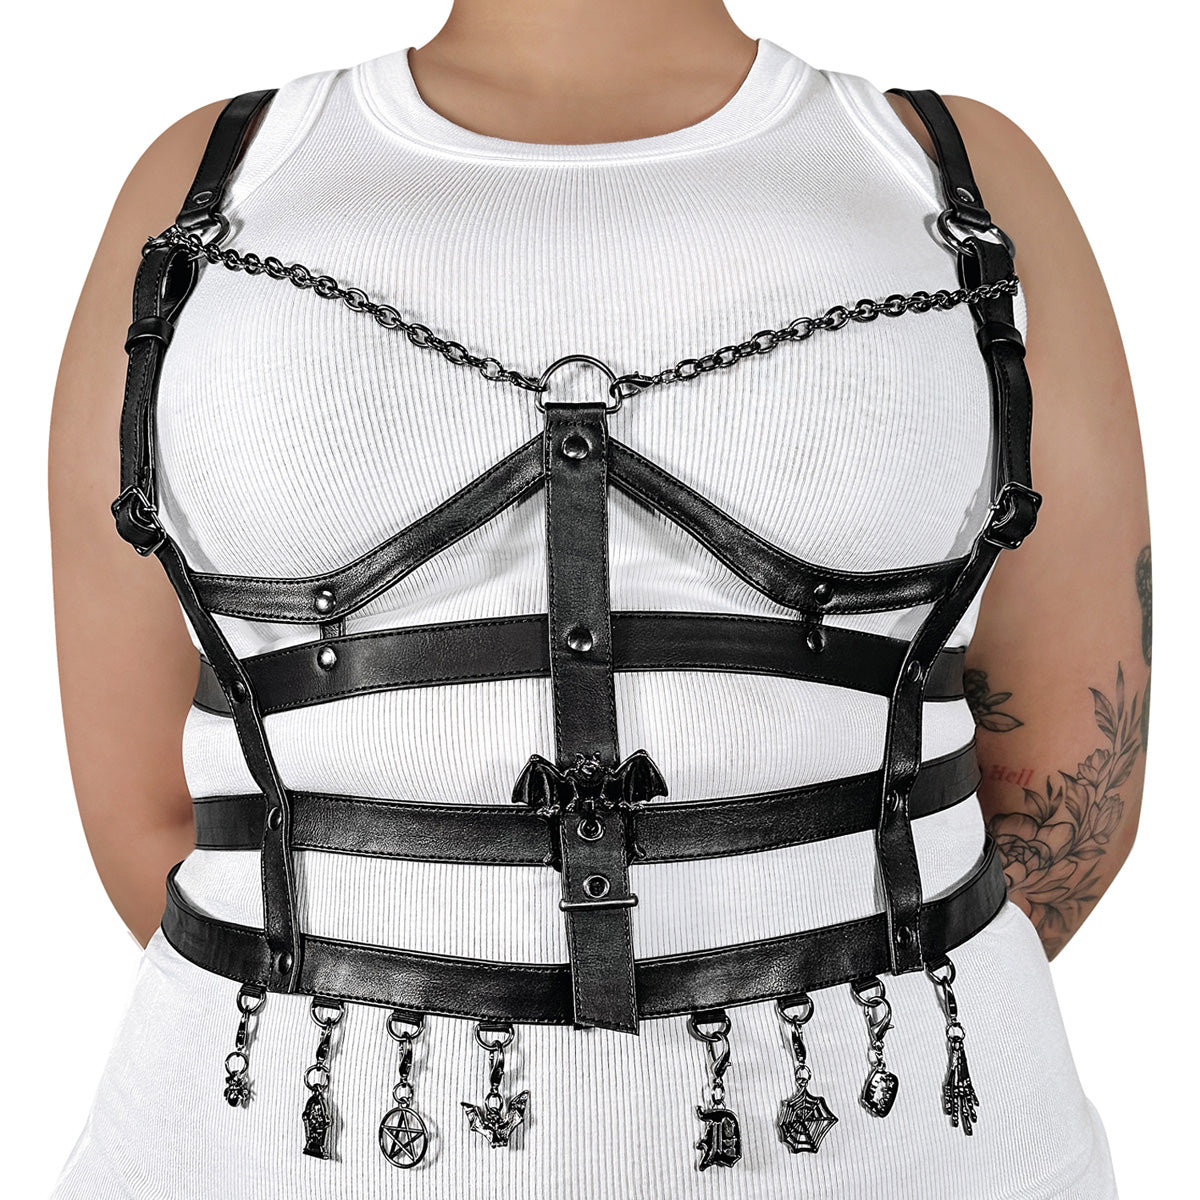 DA-118 Black Faux Leather Cage Body Harness